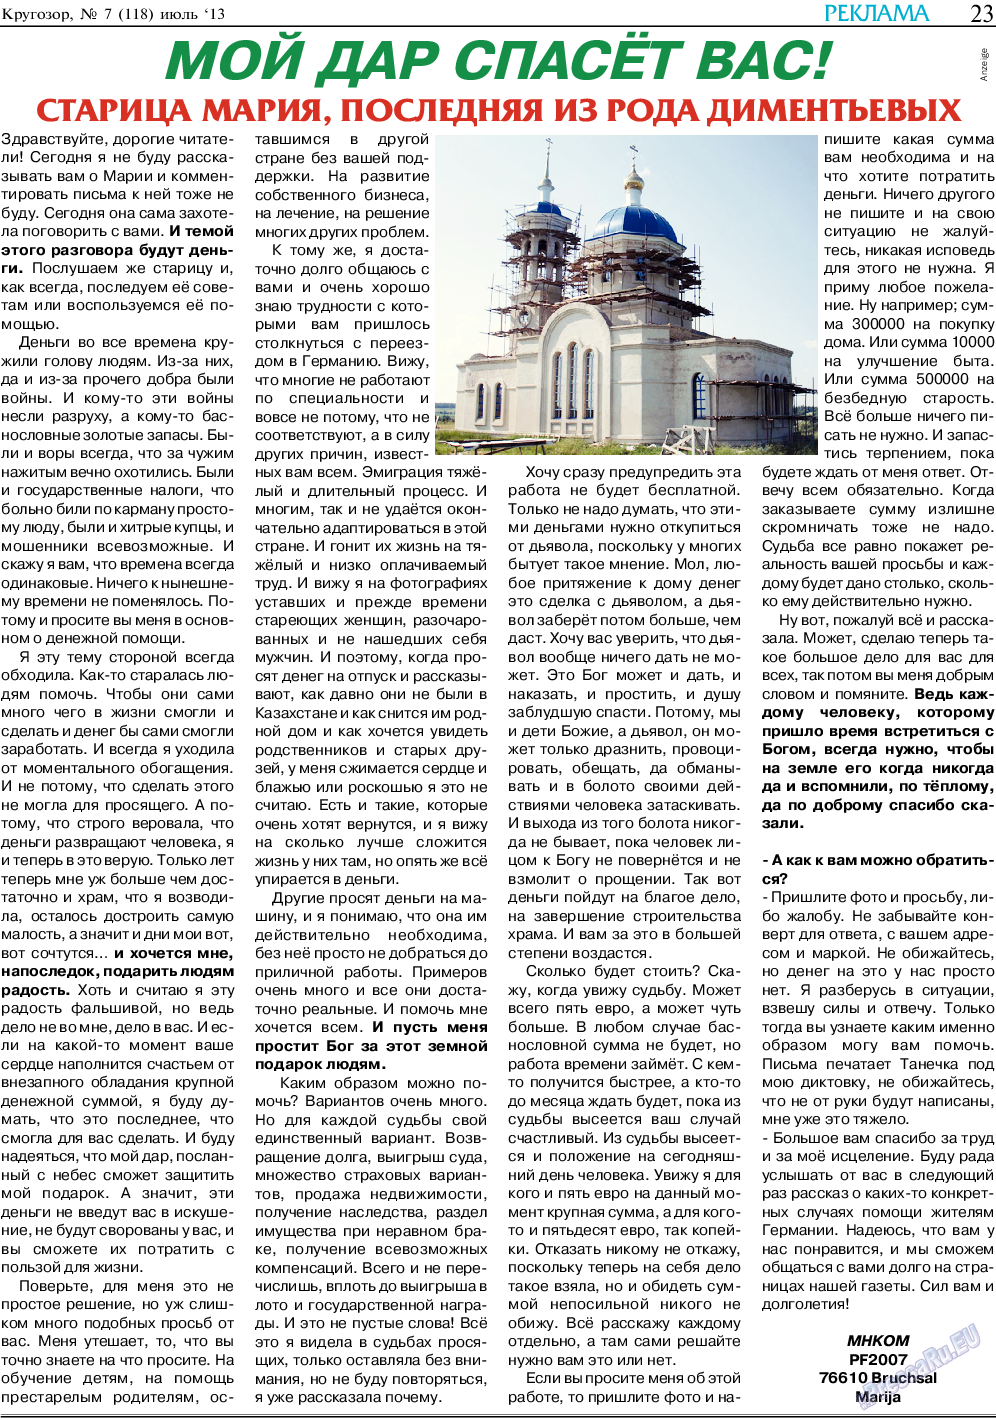 Кругозор, газета. 2013 №7 стр.23